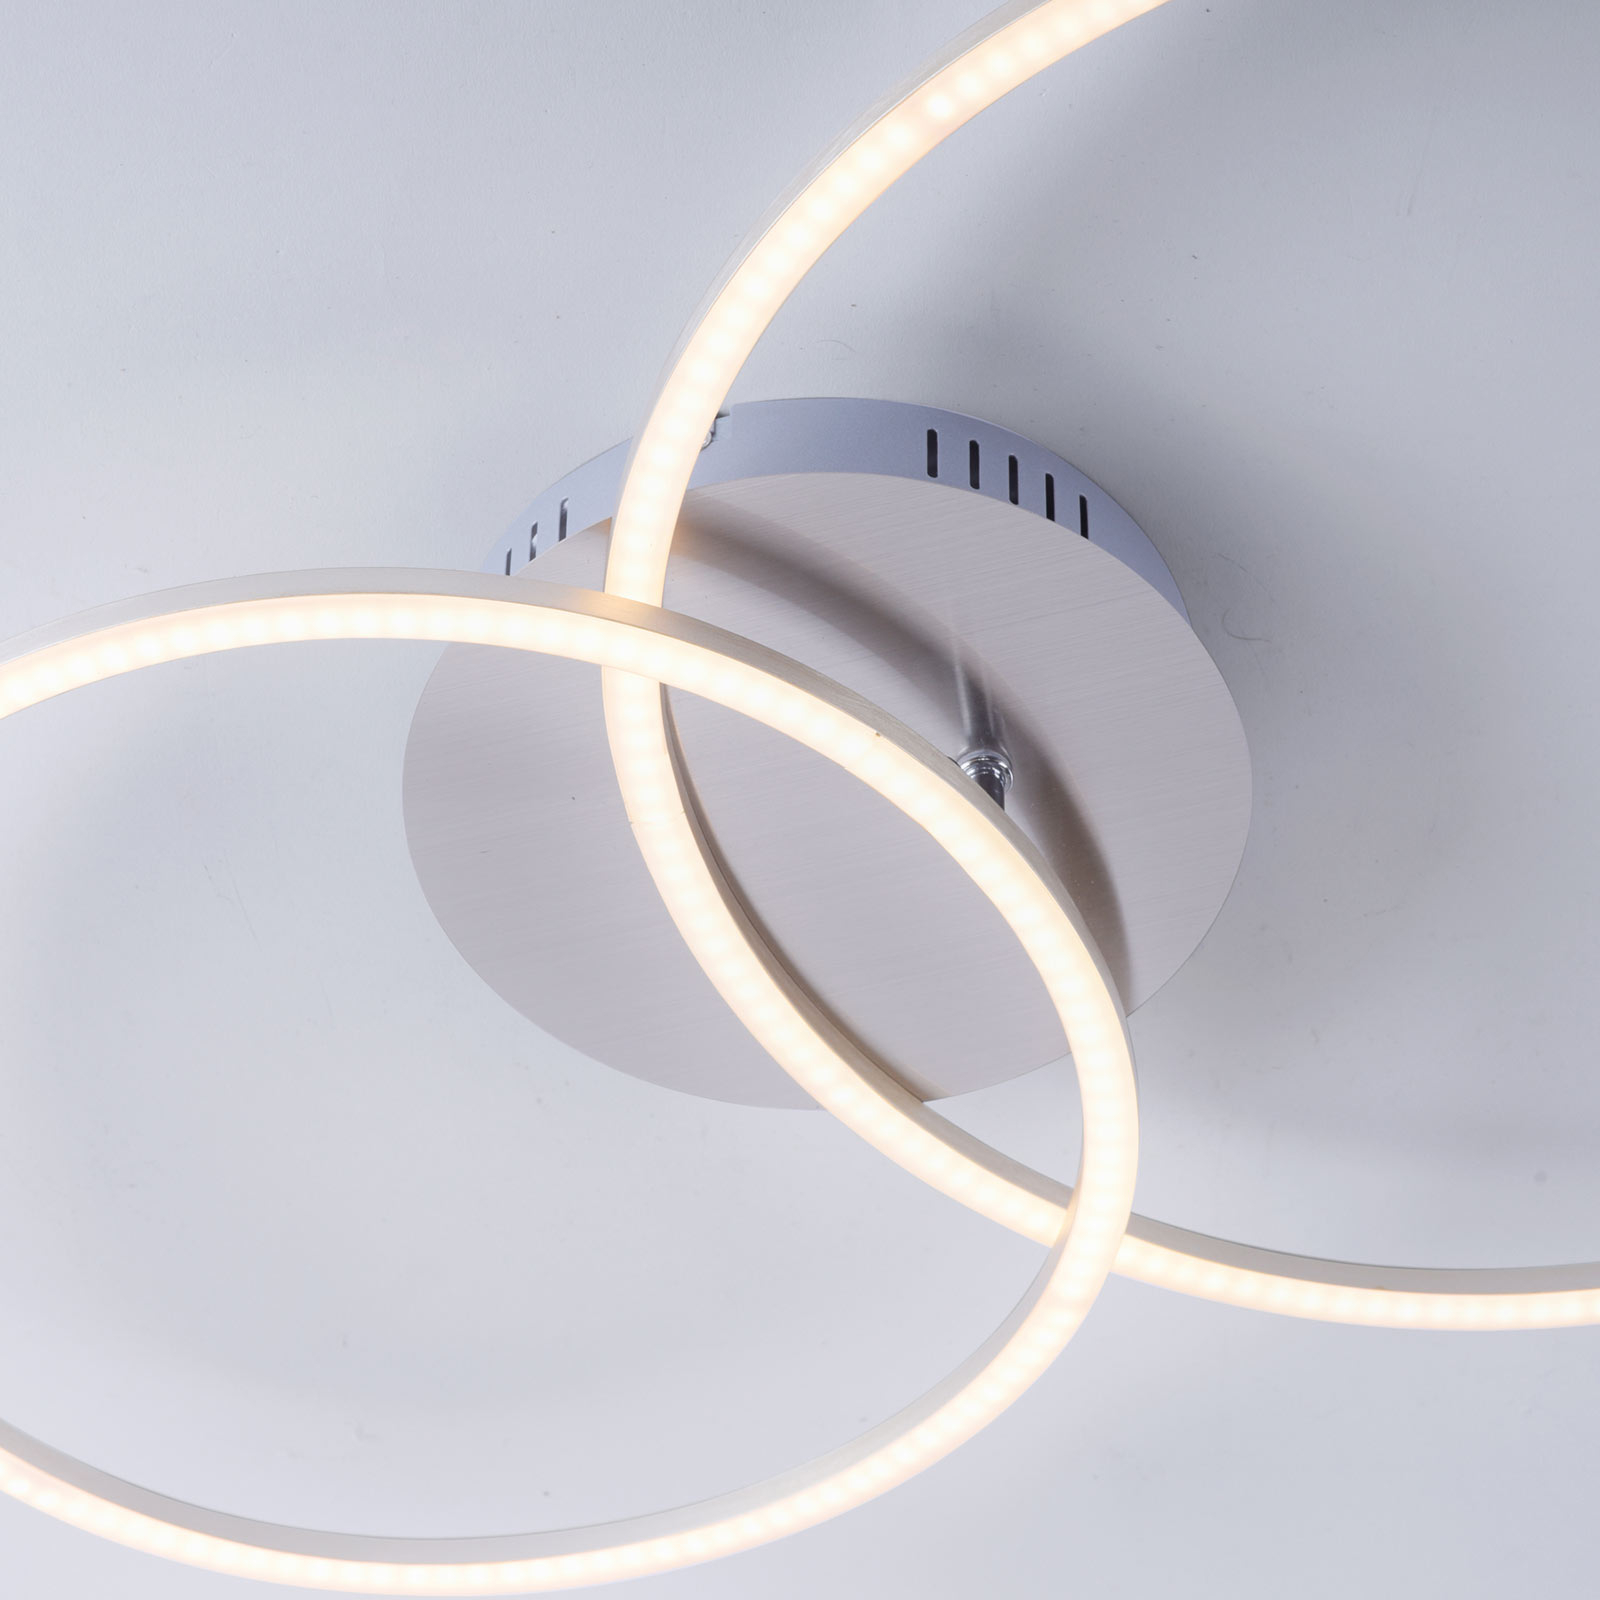 LED stropní svítidlo Ivanka, dva kruhy, ocel